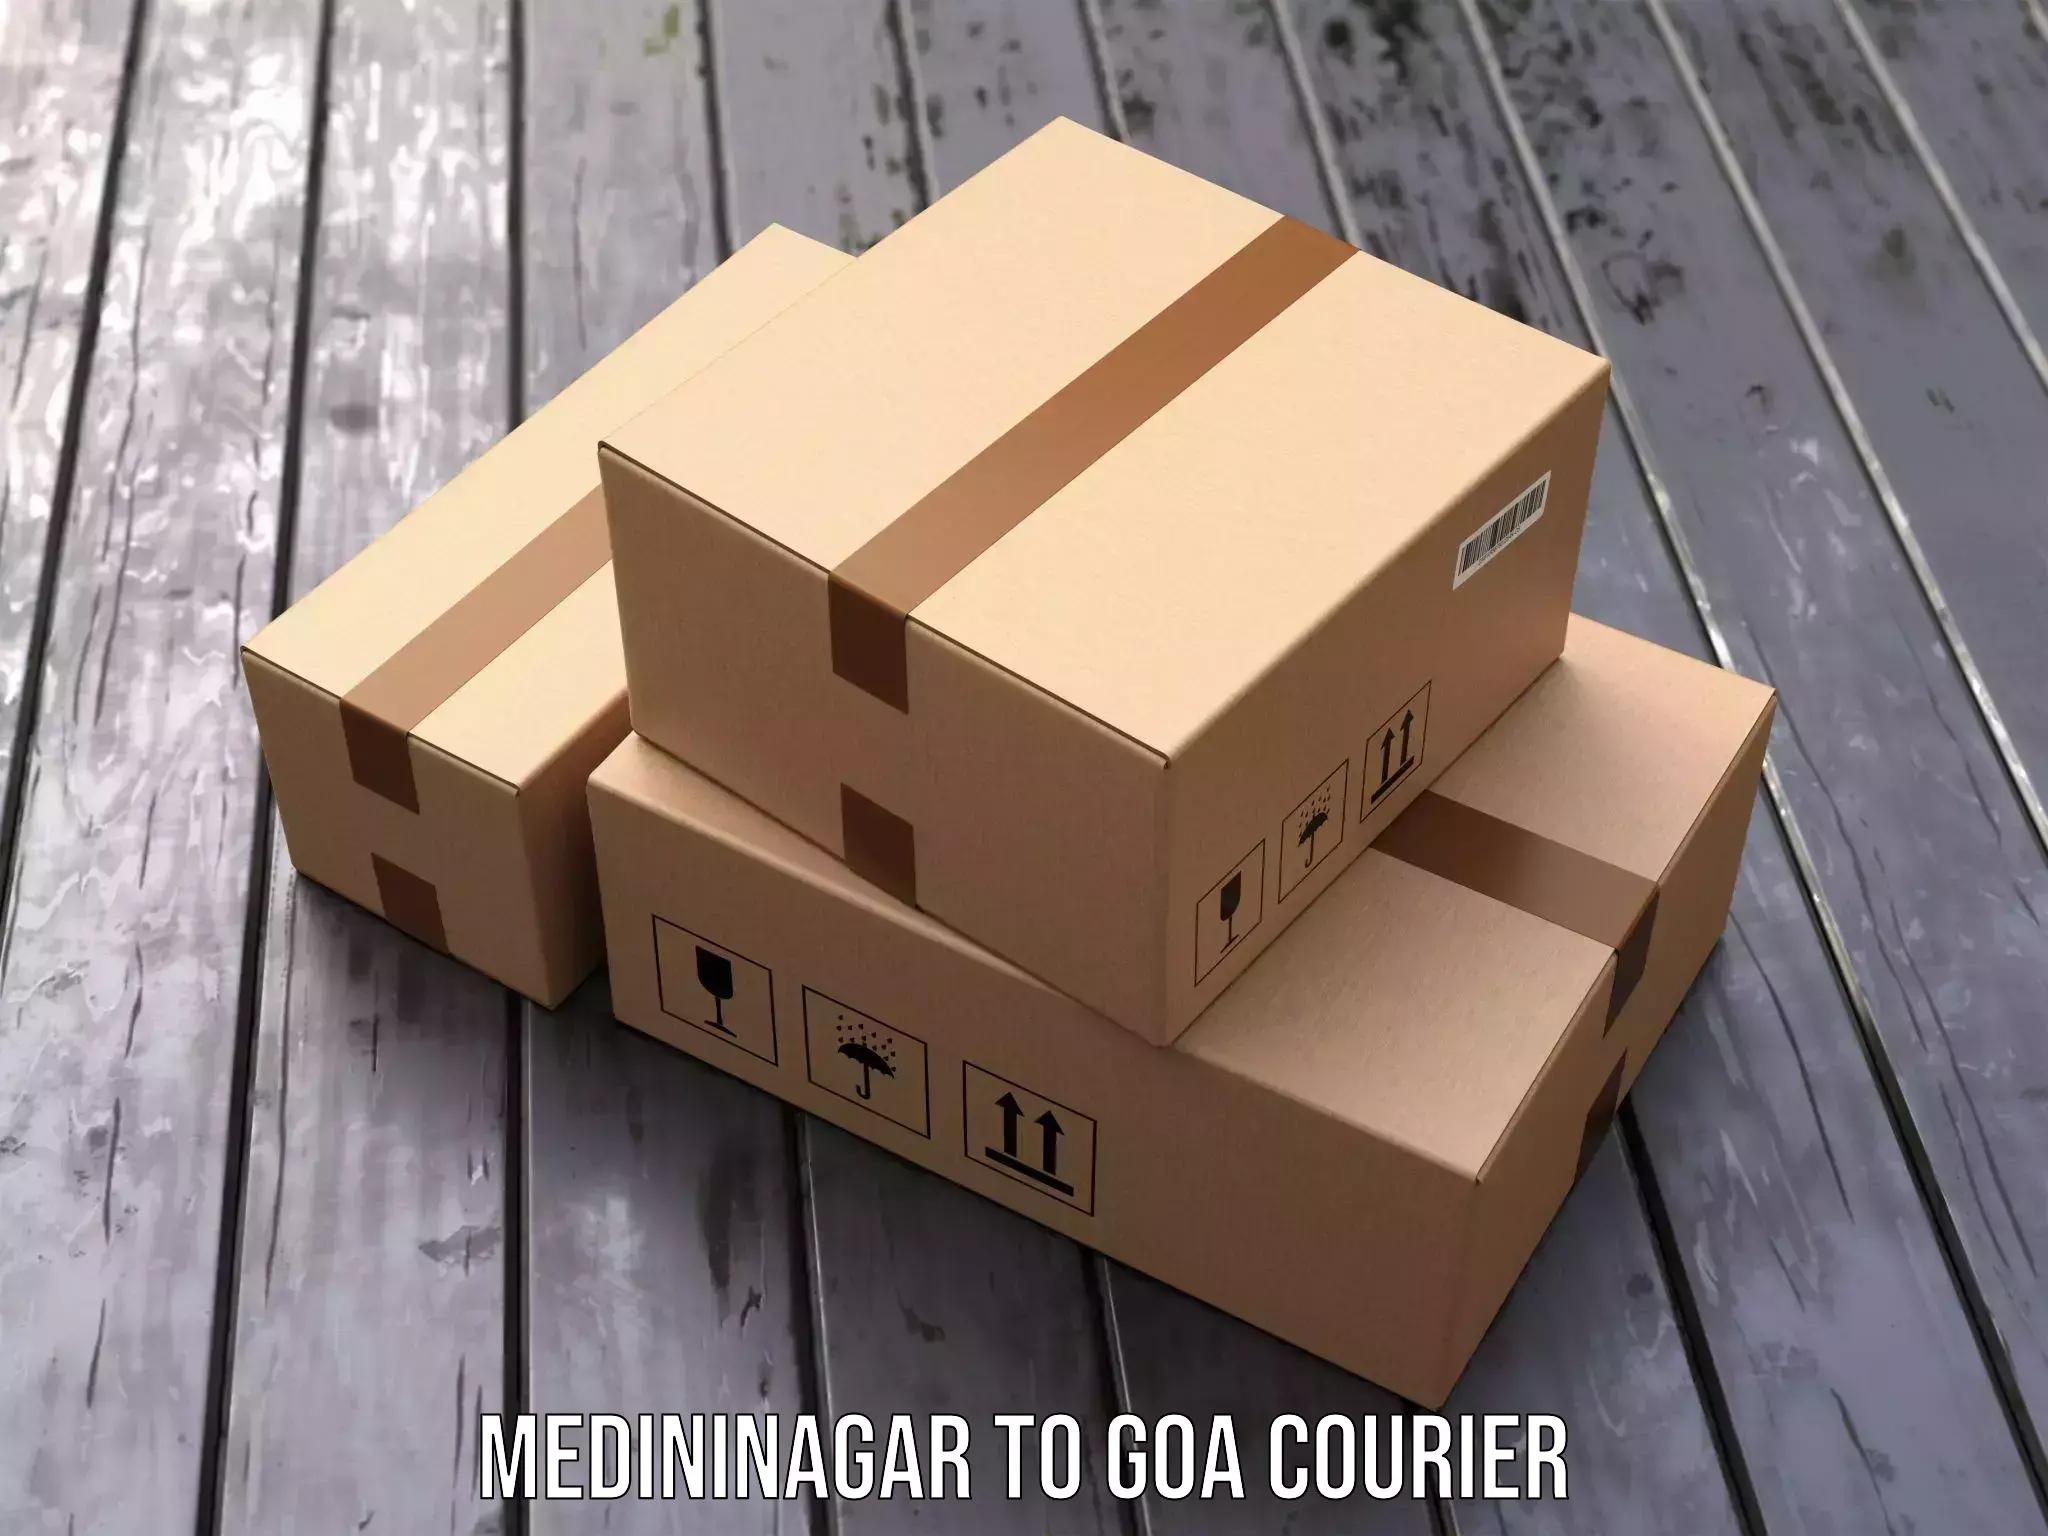 Nationwide courier service Medininagar to South Goa